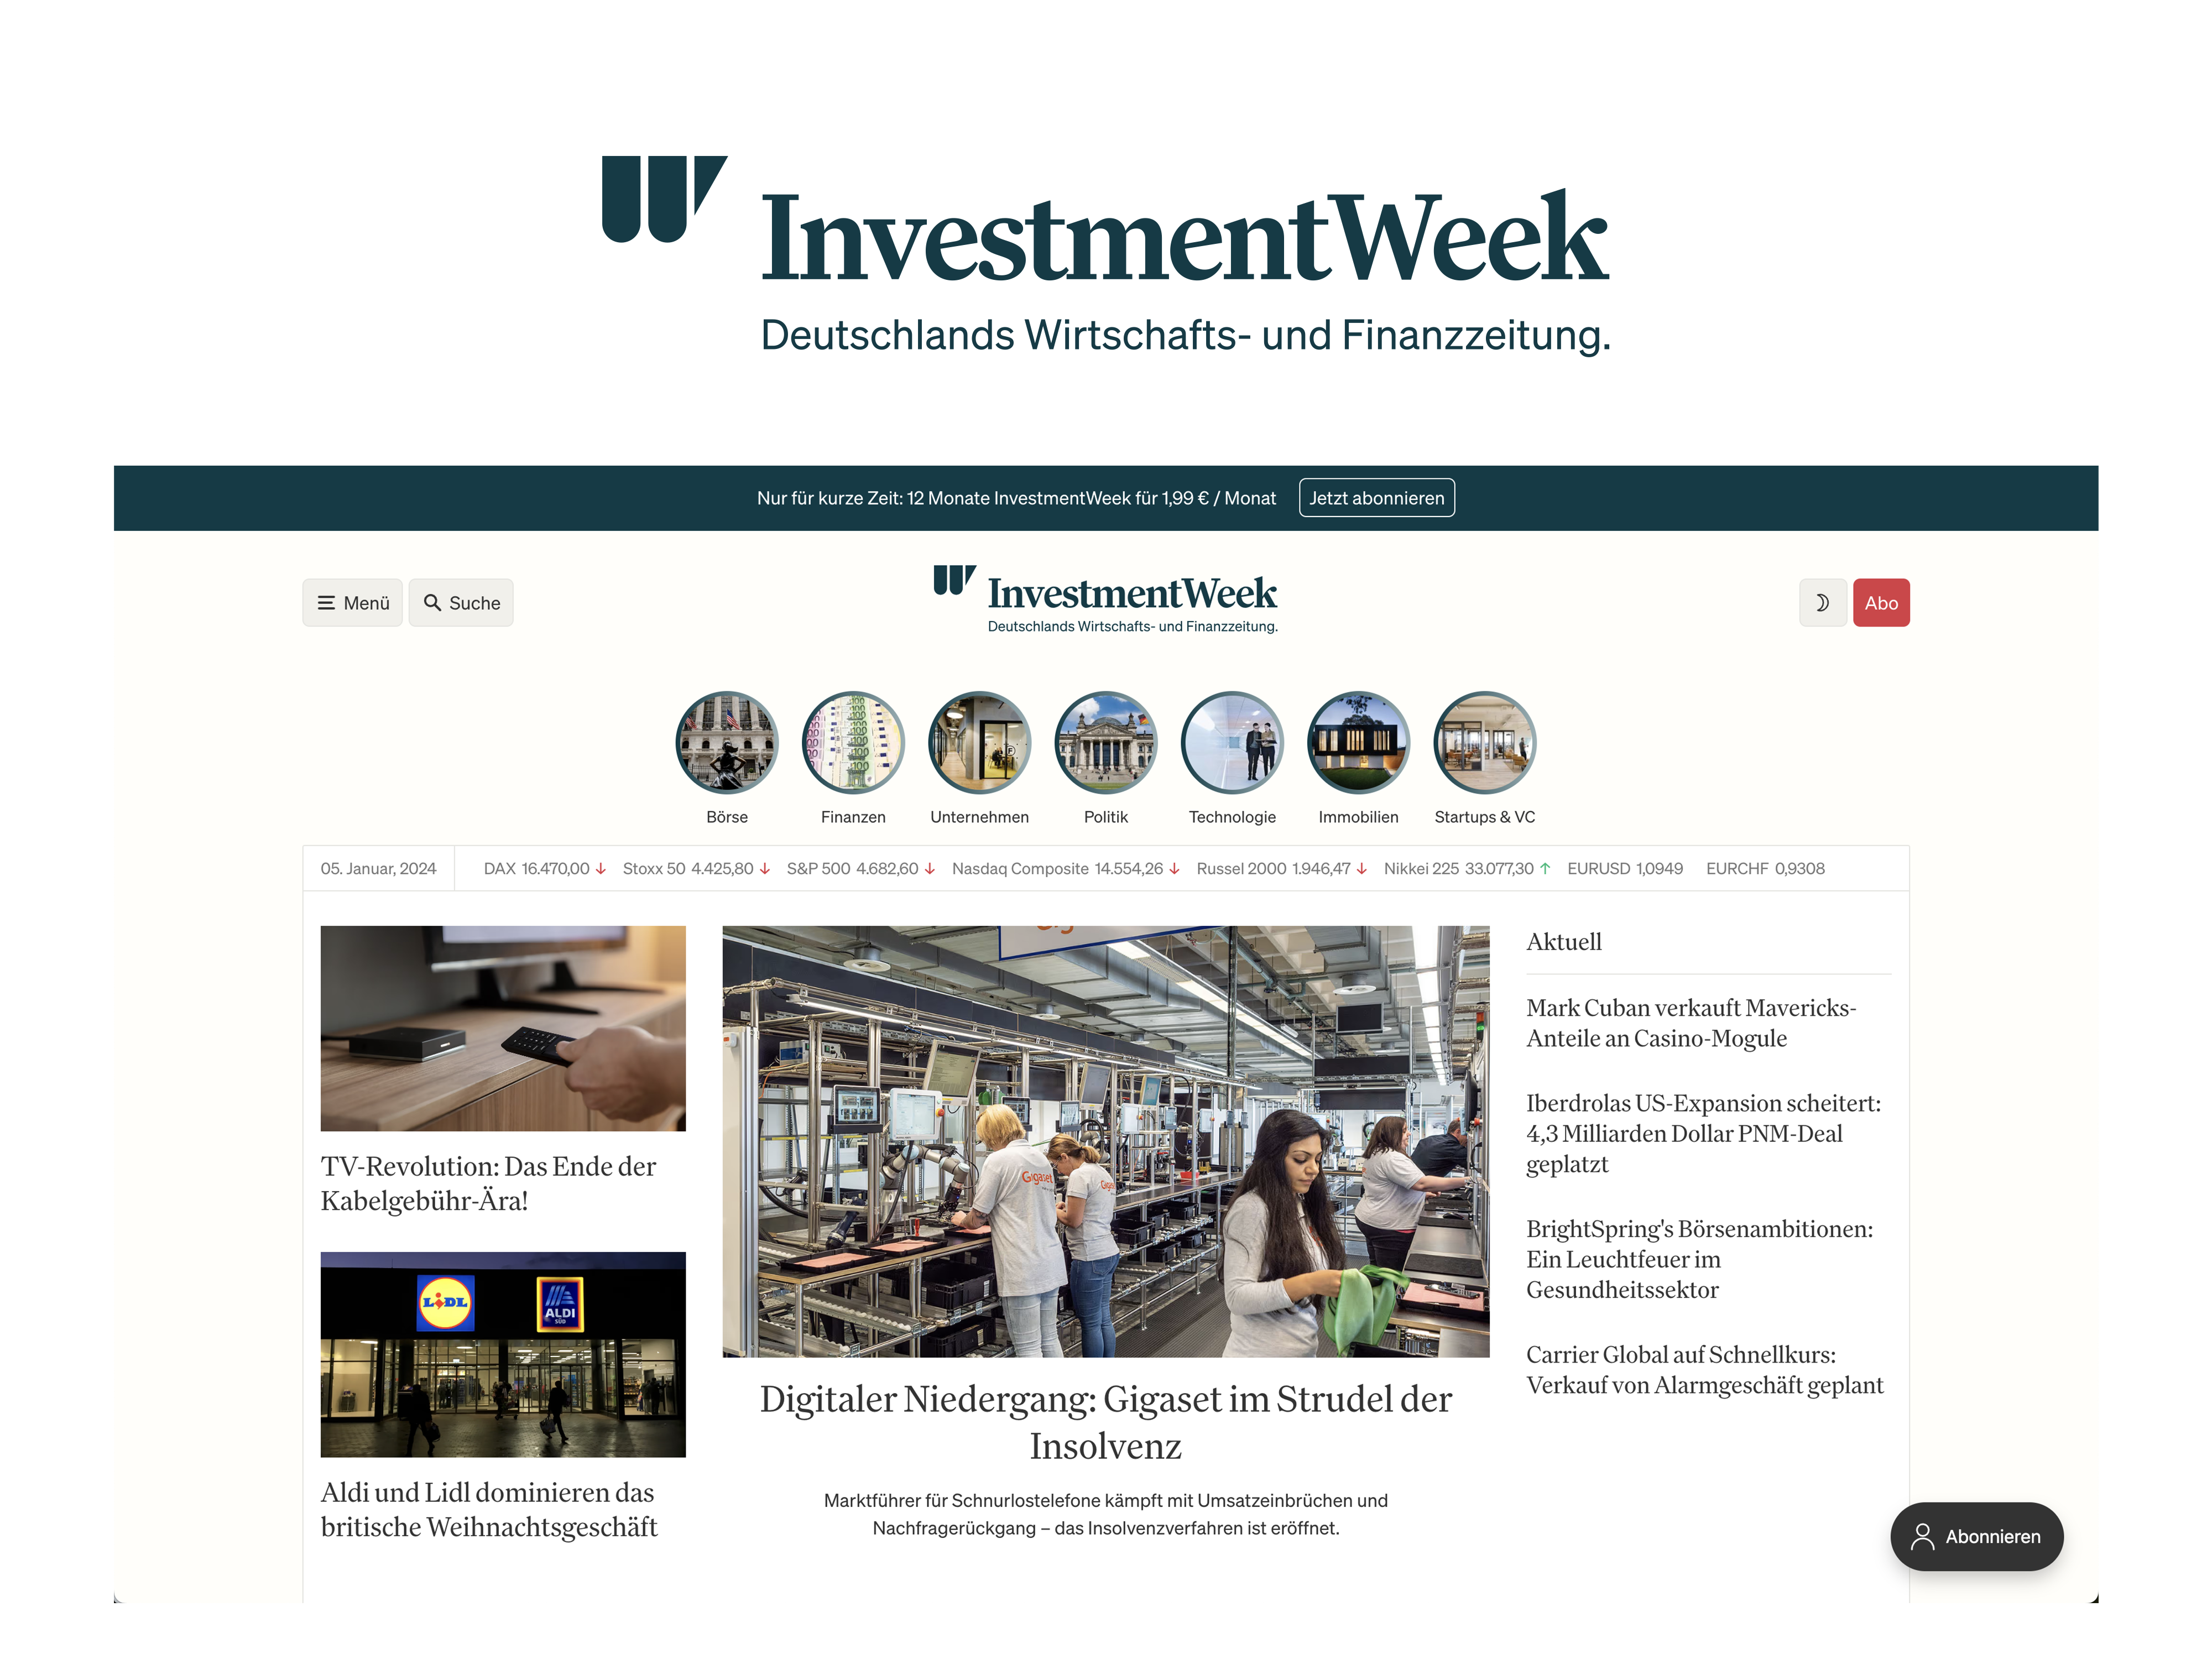 InvestmentWeek: Deutschlands neue Wirtschafts- und Finanzzeitung geht an den Start